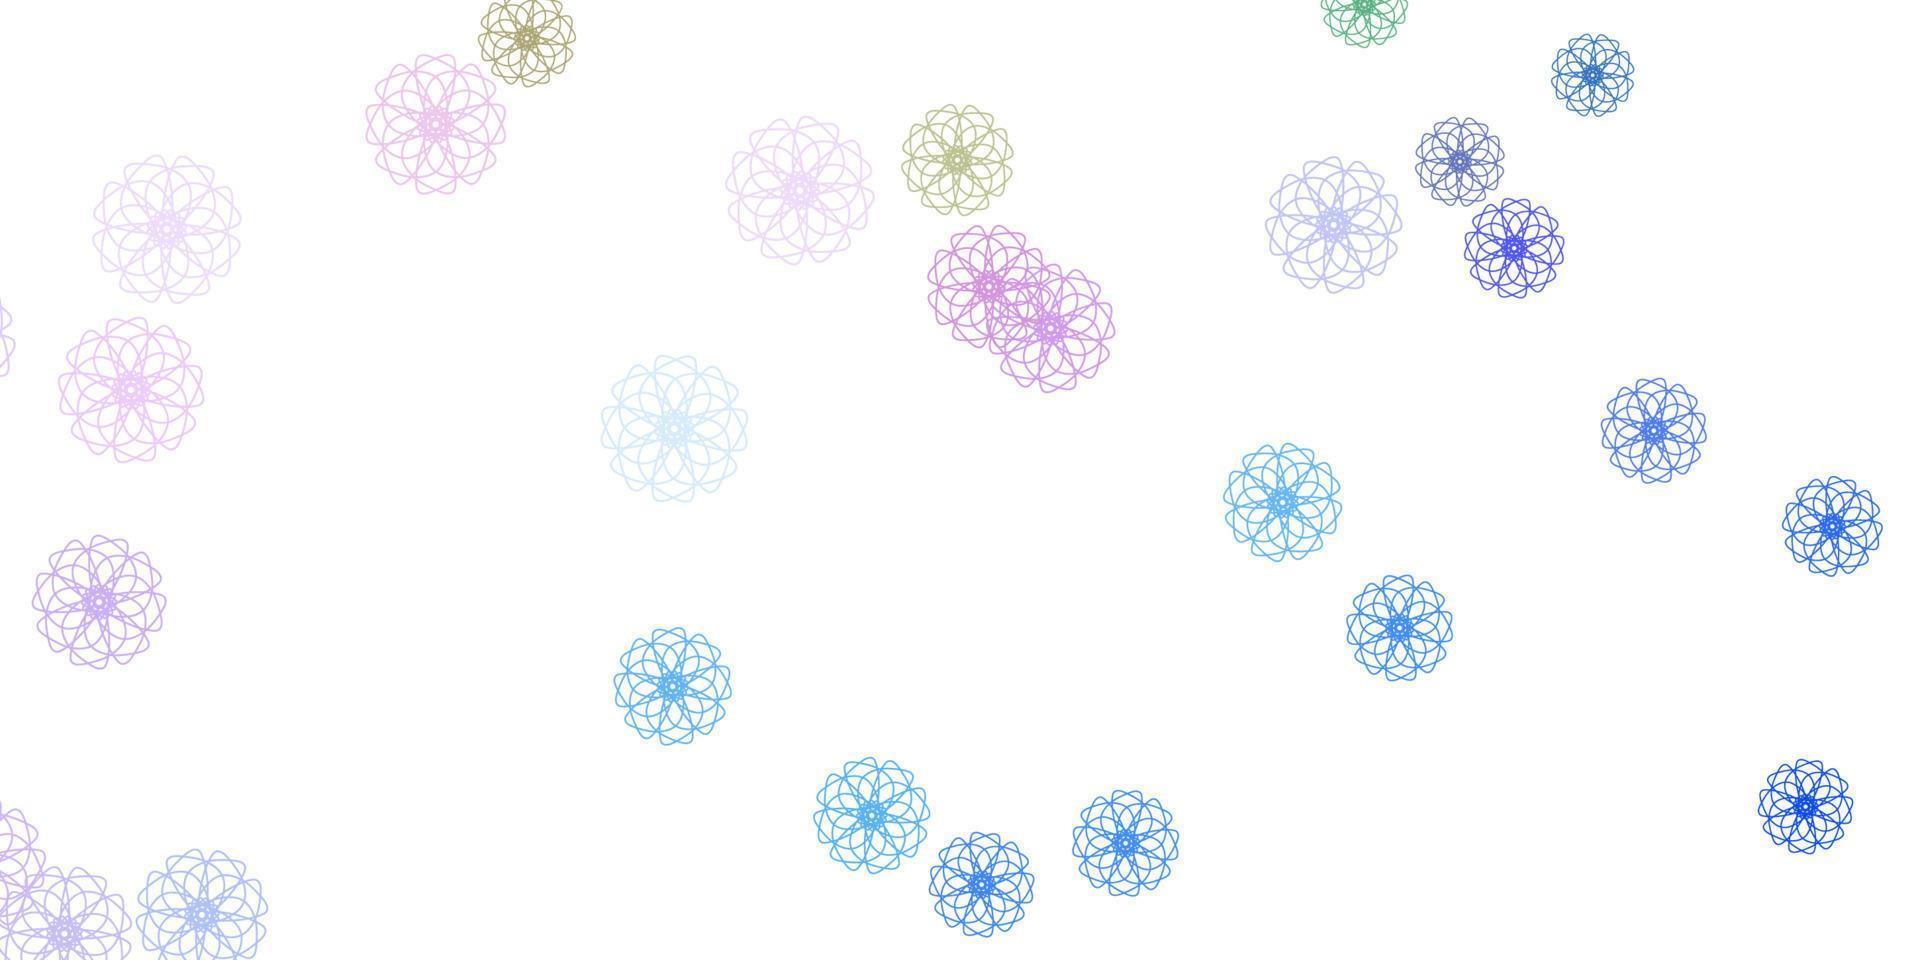 ljusblå, röd vektor doodle textur med blommor.